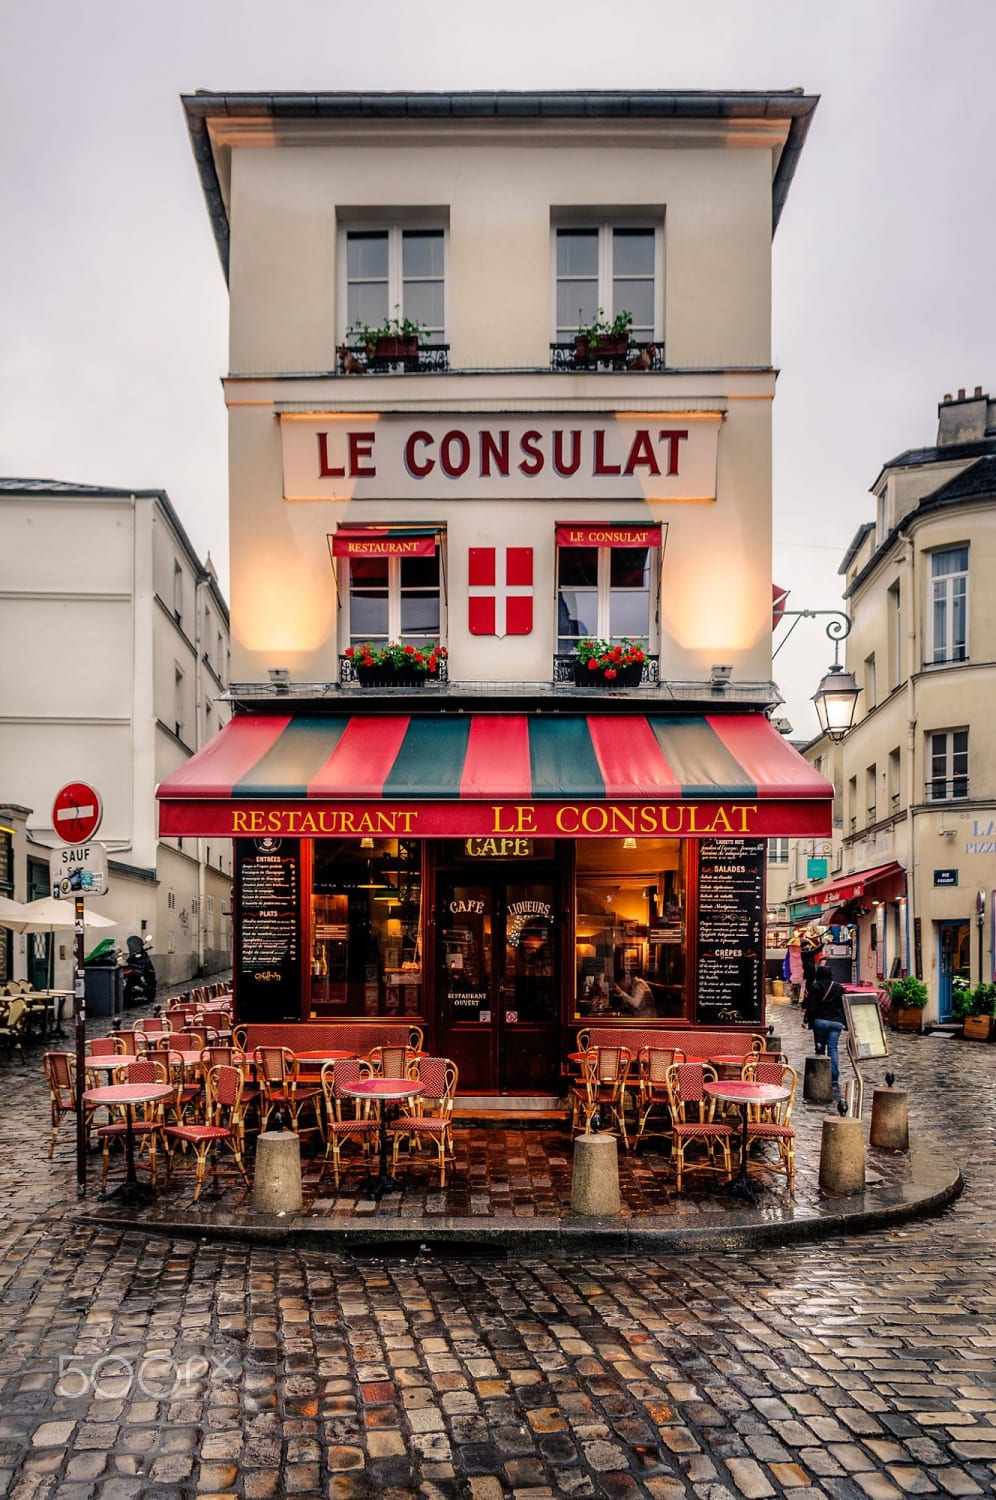 Le Consulat, Montmartre, Paris | Paris travel, Paris restaurants, Montmartre paris